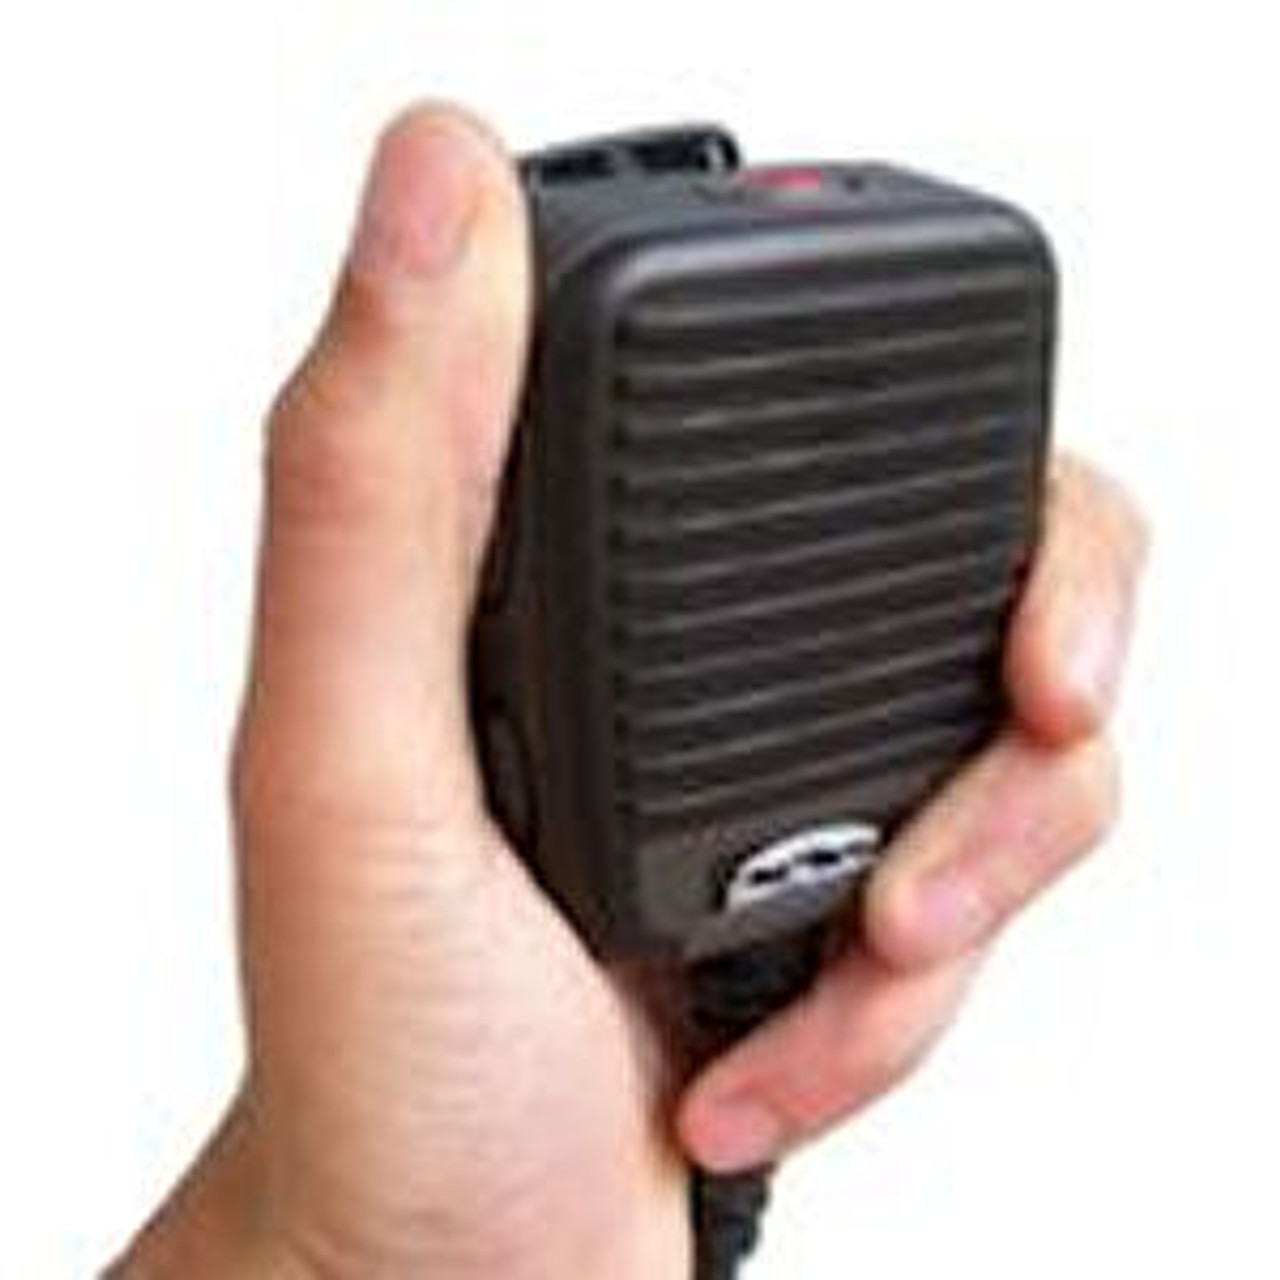 Kenwood TK-5330 Ruggedized Waterproof IP68 High Volume Speaker Mic